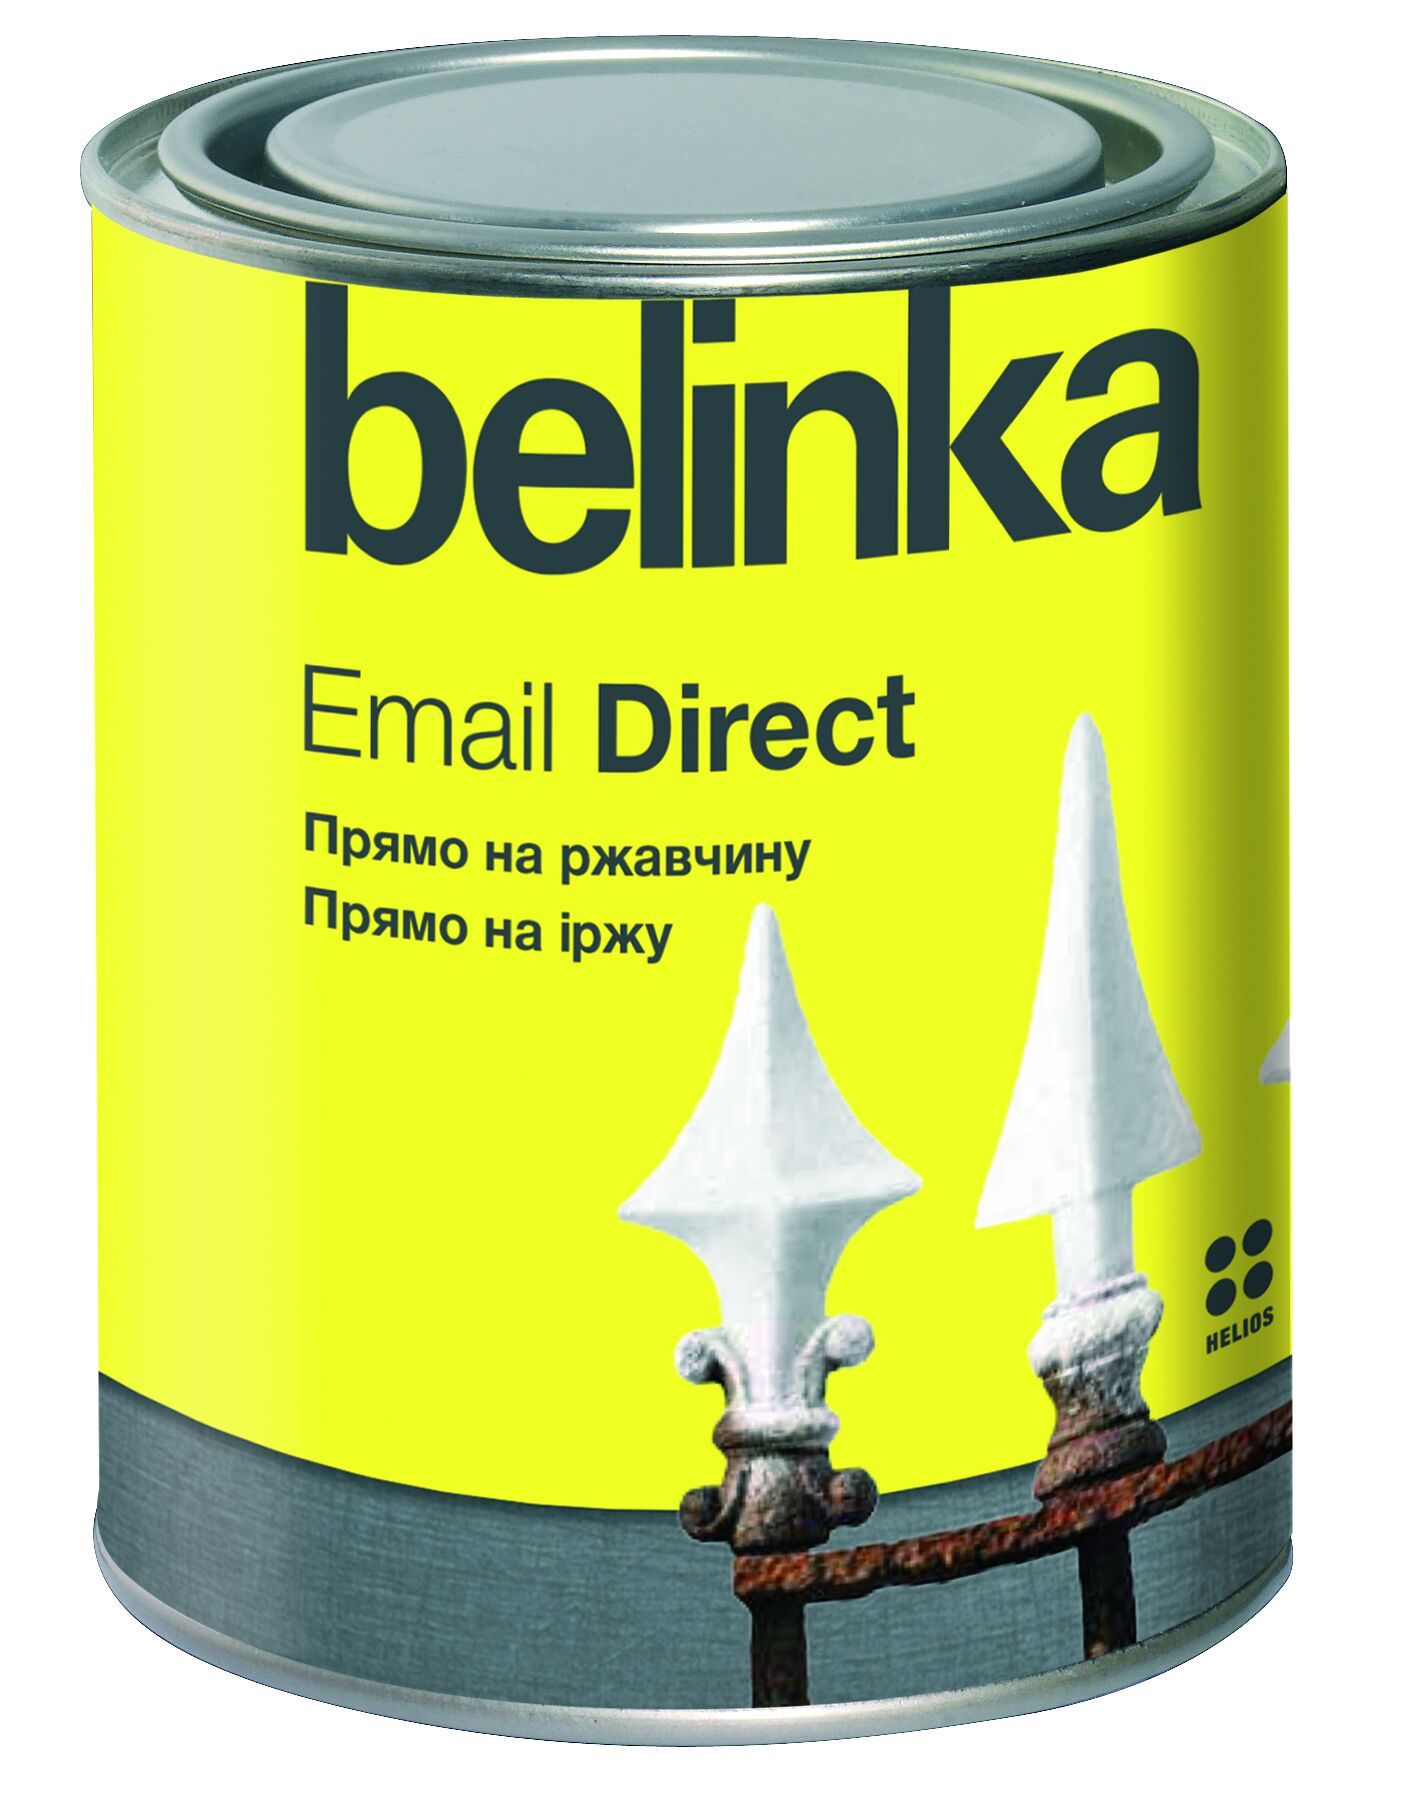 Эмаль по ржавчине Email Direct Belinka Красная 2,5 л